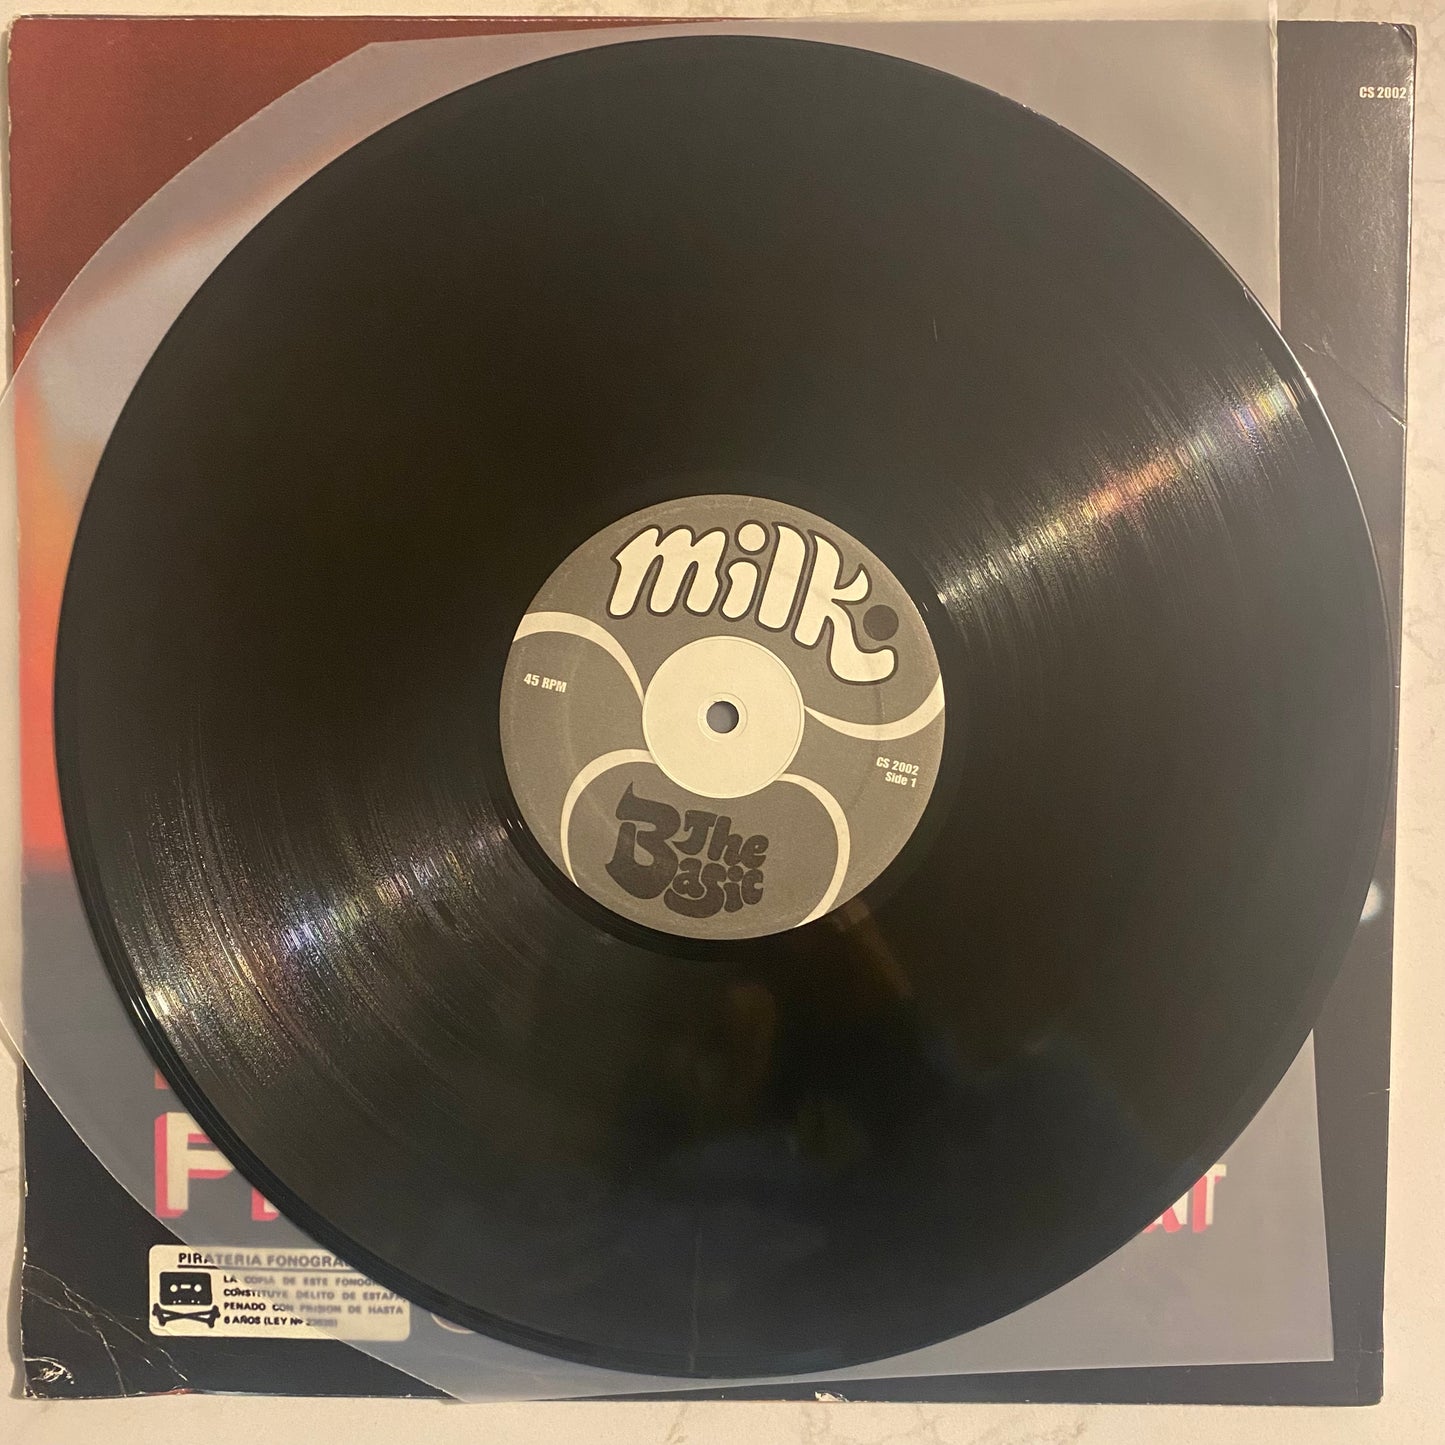 DJ Shadow ★ Cut Chemist – Product Placement (LP, ALbum)